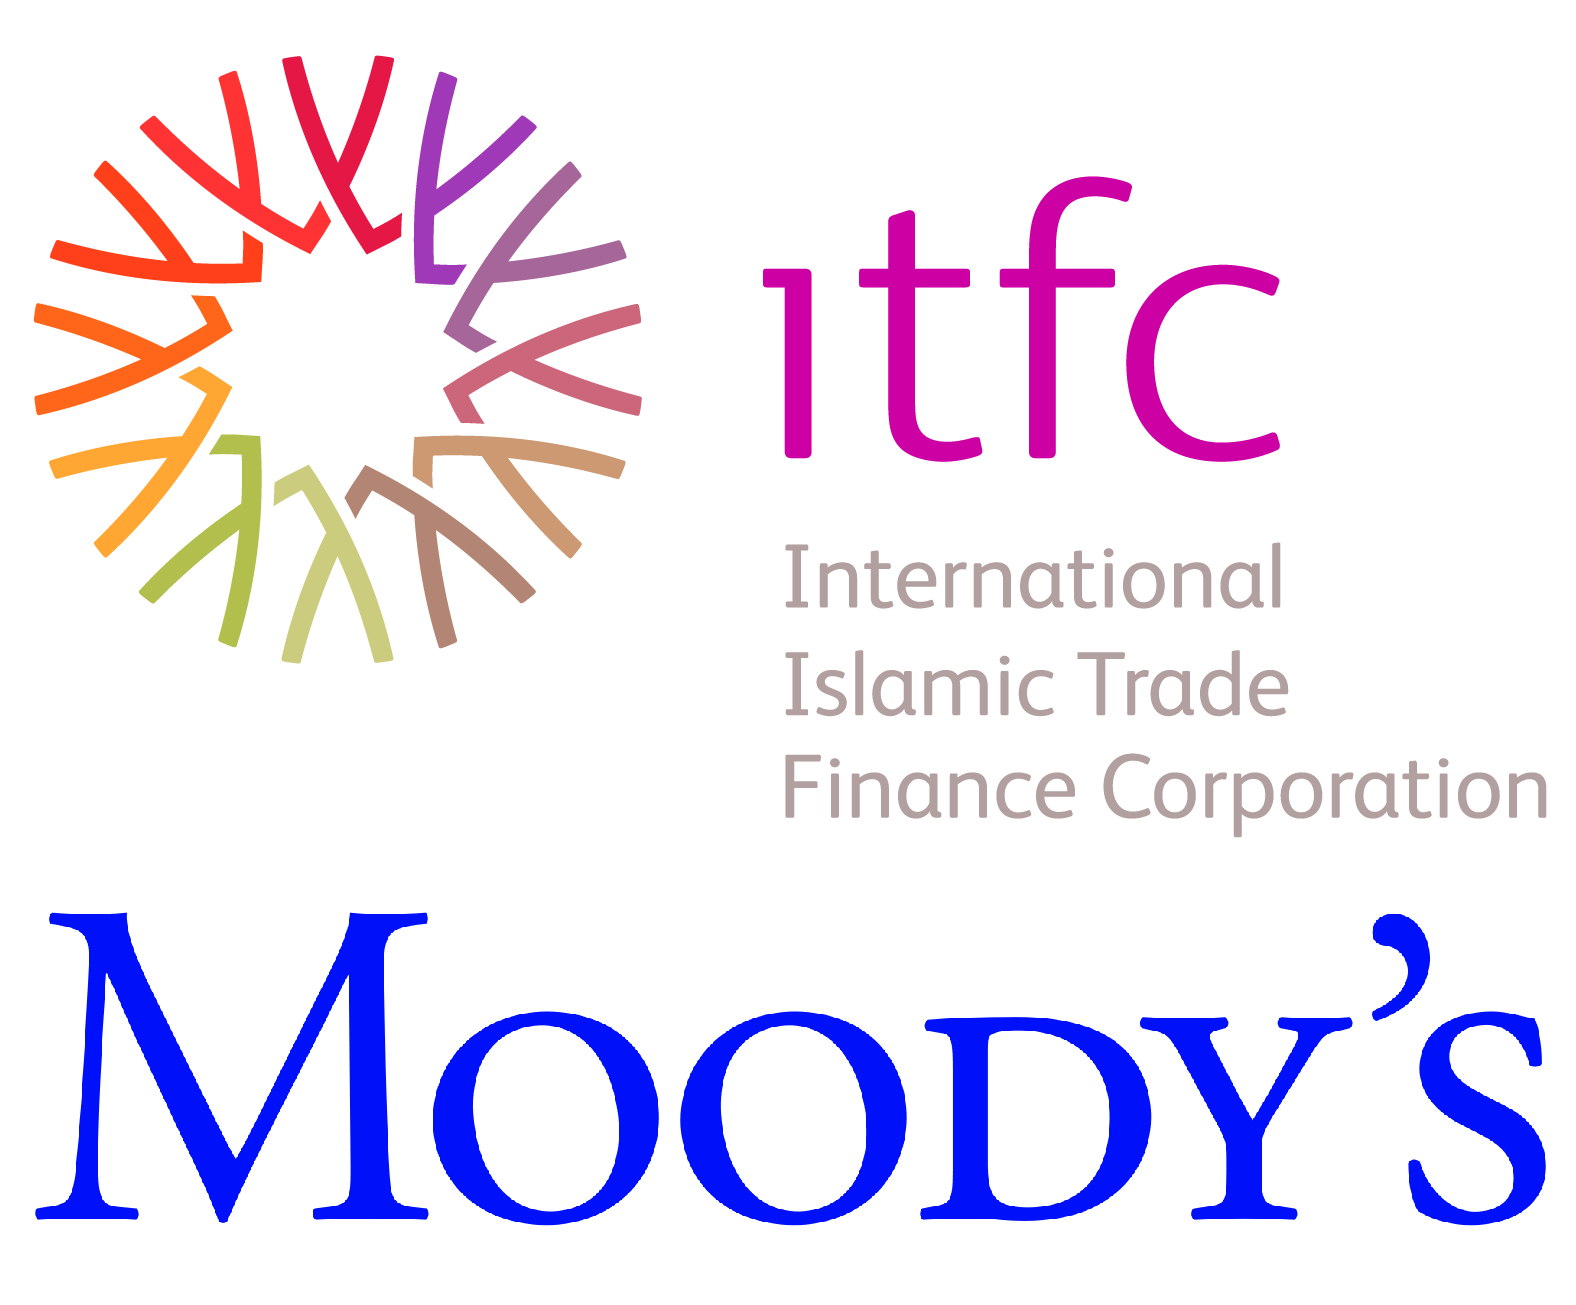 Société internationale islamique de financement du commerce : Moody’s réaffirme sa note A1